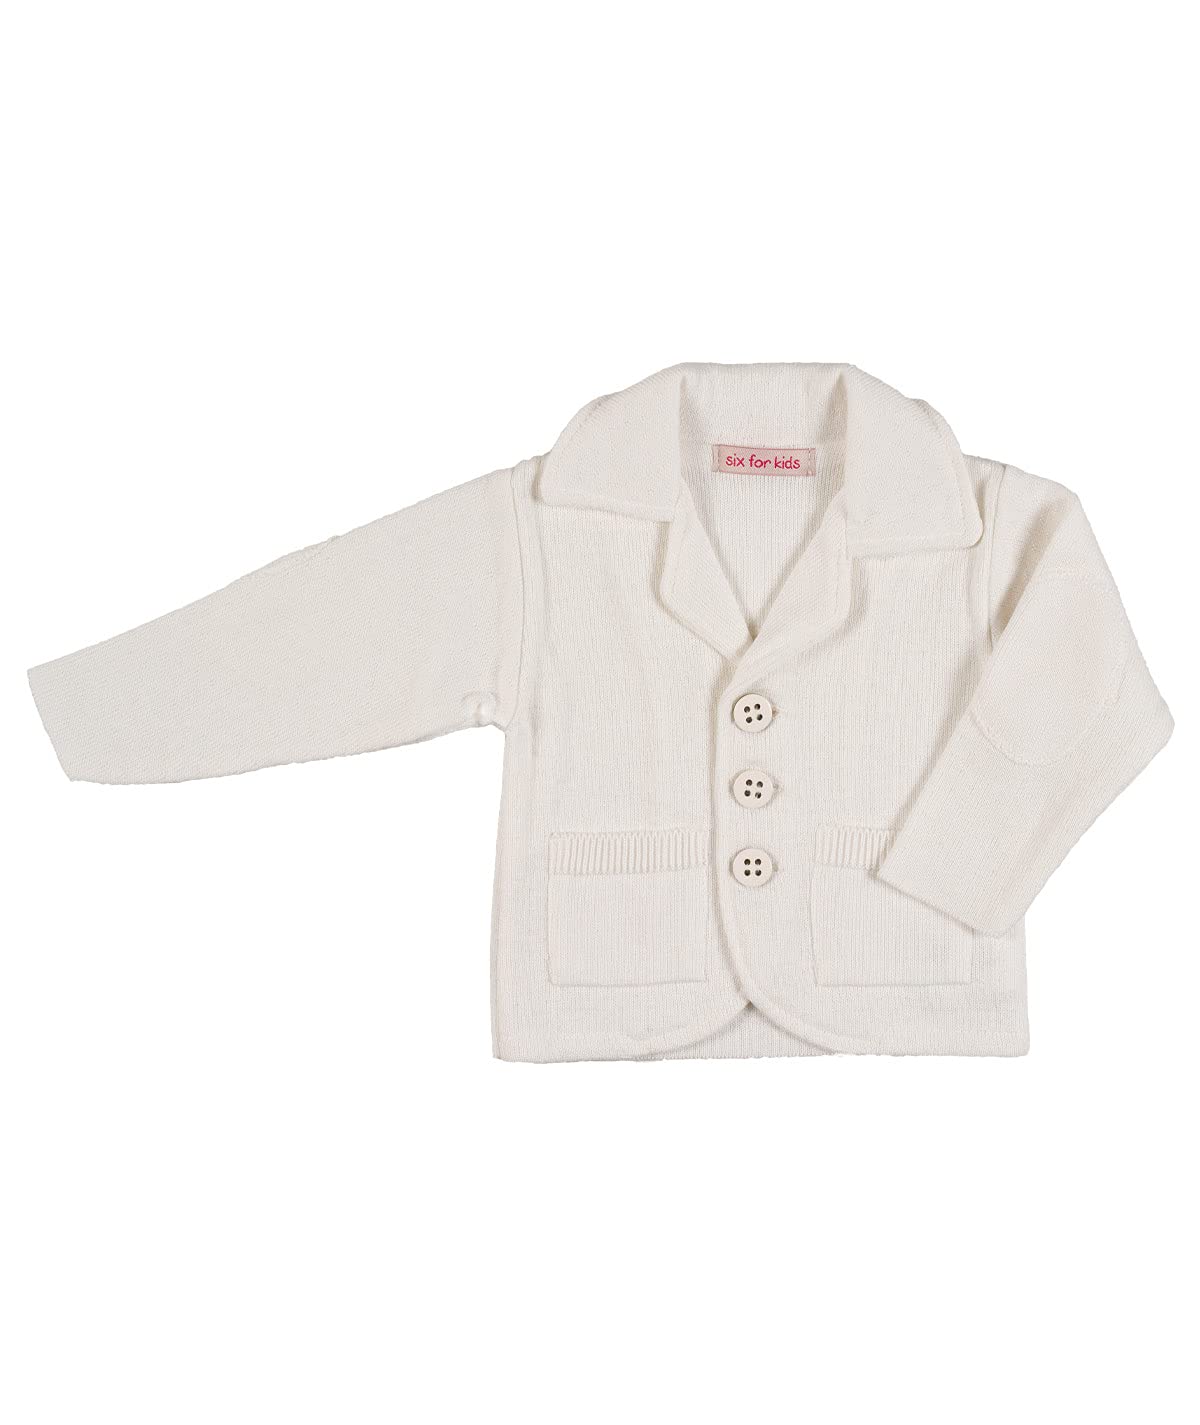 Cocolina4kids Baby Jungen Sakko Strickjacke Weiß oder Ivory Taufanzug Jacke Sakko (74, Ivory)